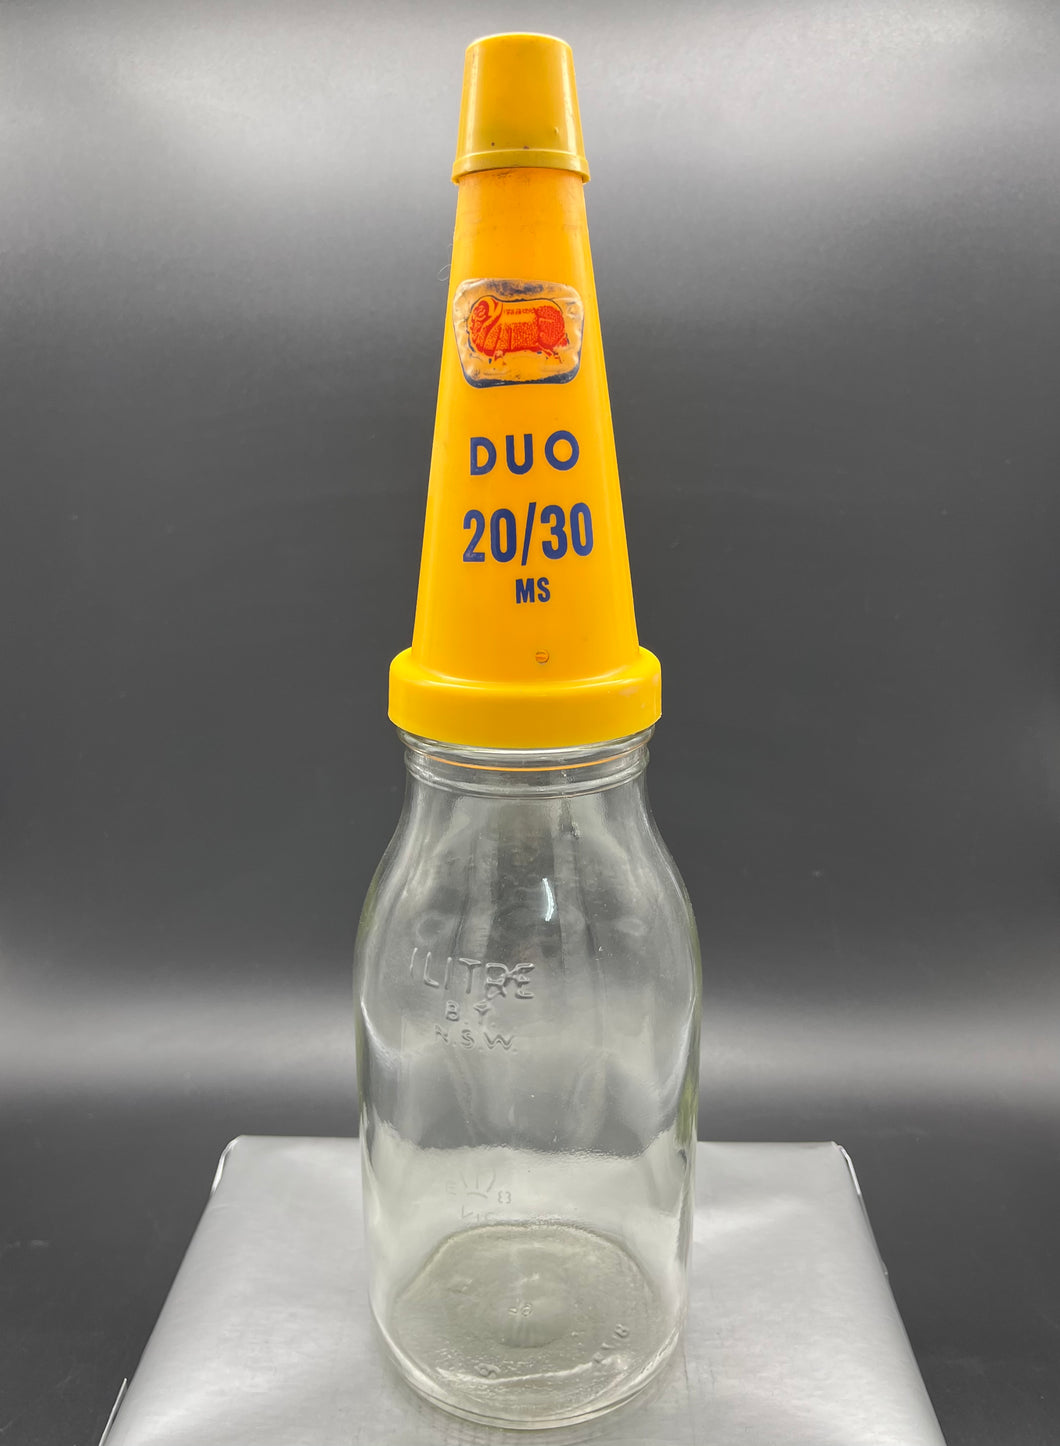 Golden Fleece Duo 20/30 Plastic Top and Cap on Litre Bottle